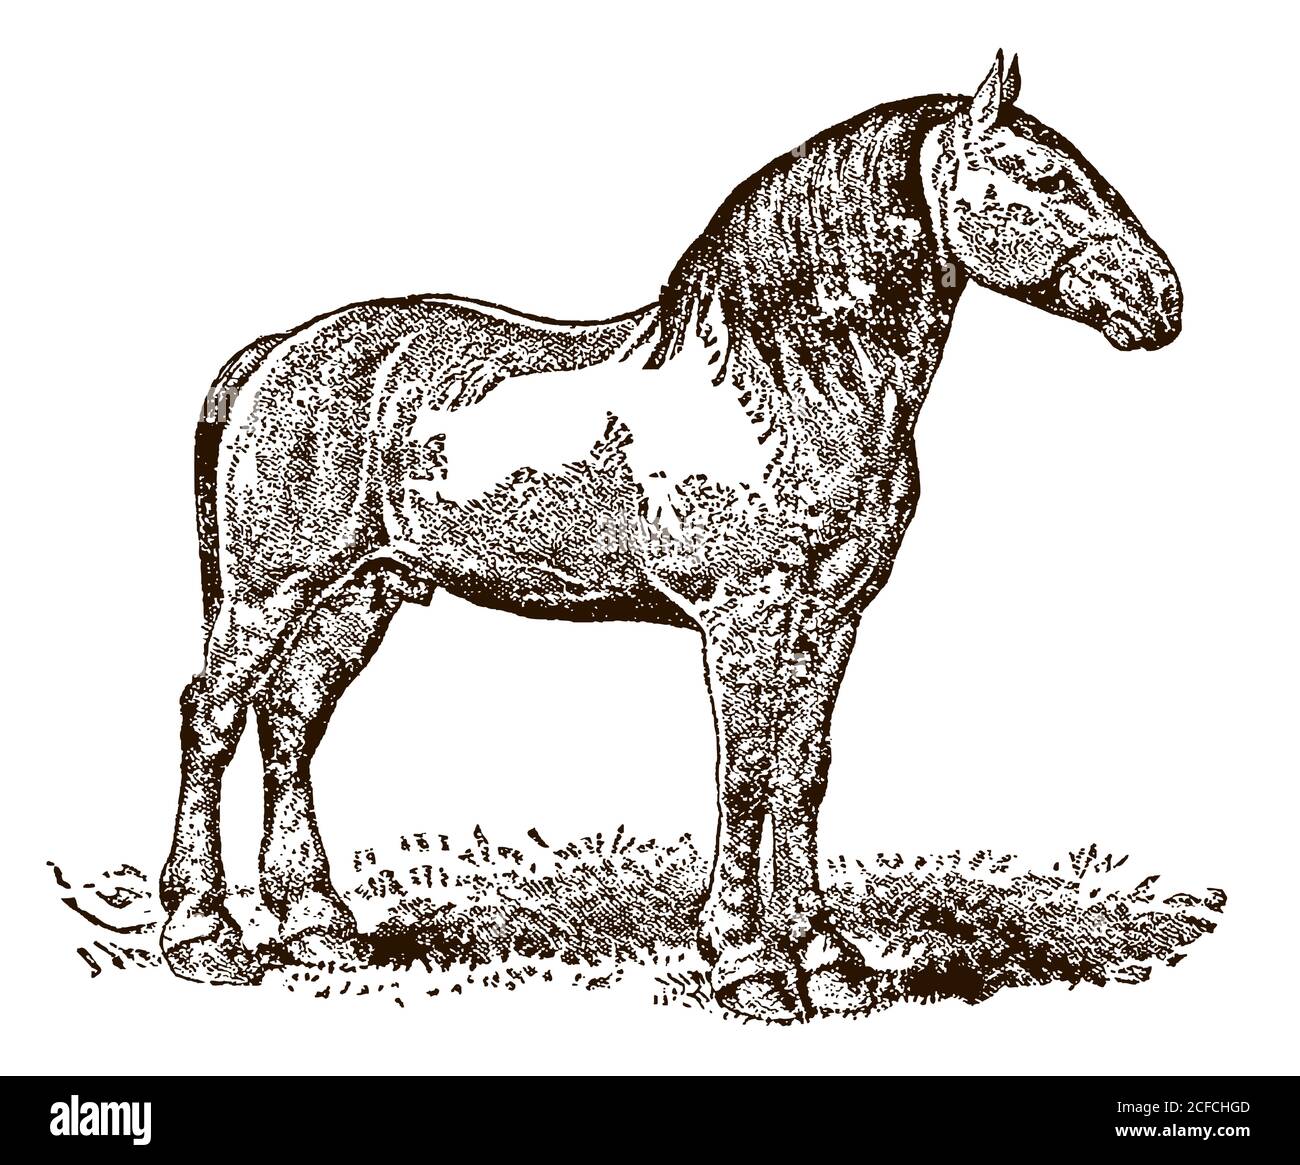 Percheron tirant sur le cheval avec vue latérale sur un pré, après une illustration antique du XIXe siècle Illustration de Vecteur